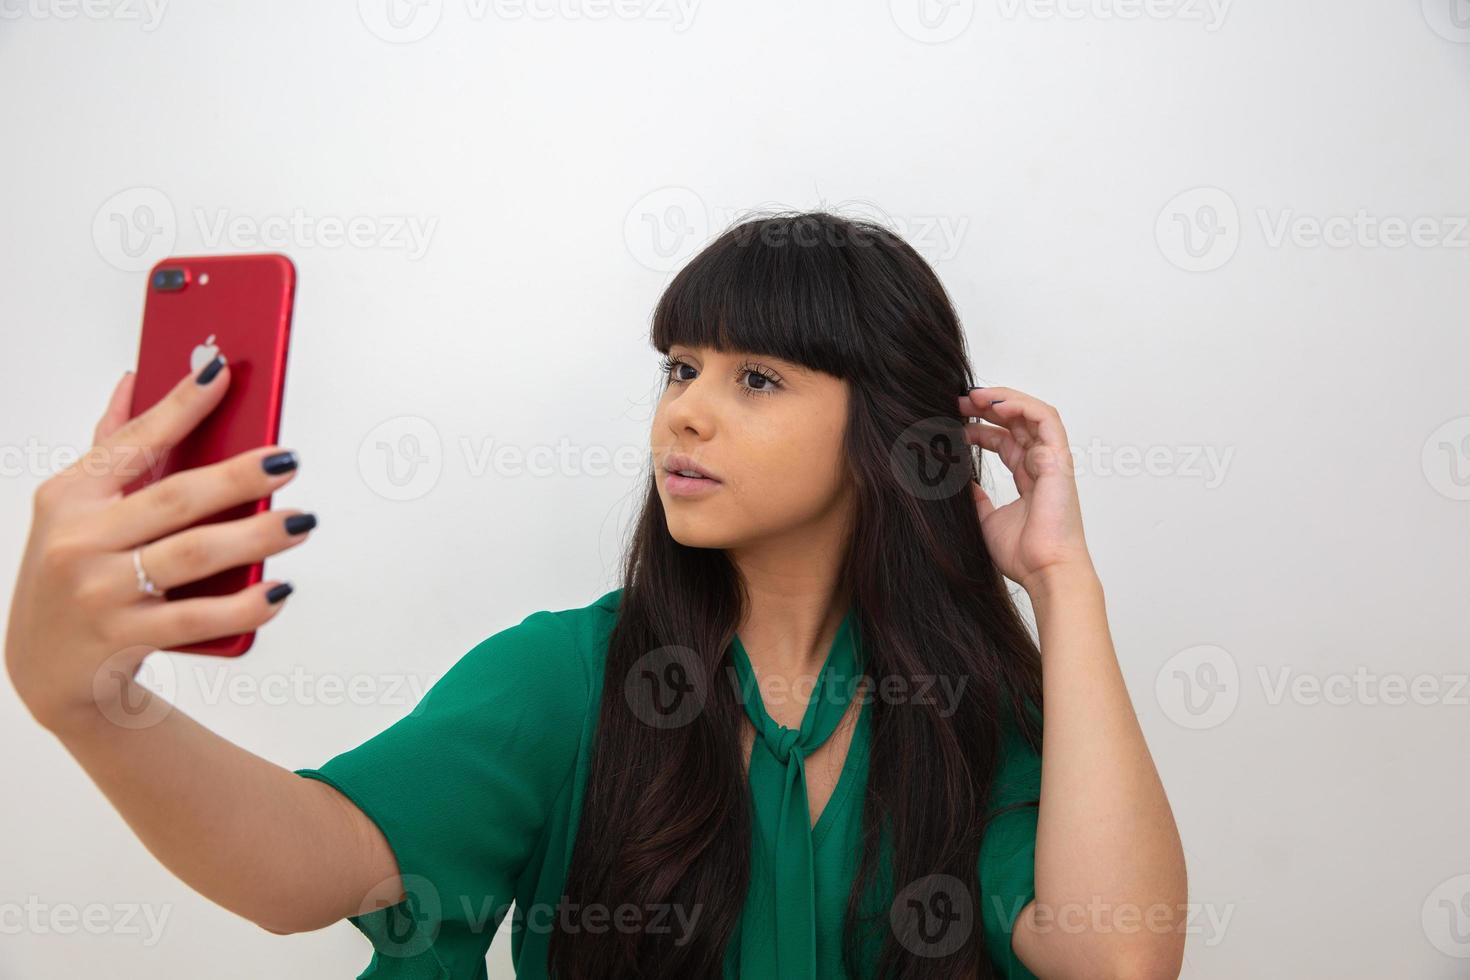 autorretrato de mulher legal, incrível, bonita, positiva e sexy, tirando selfie na câmera frontal foto